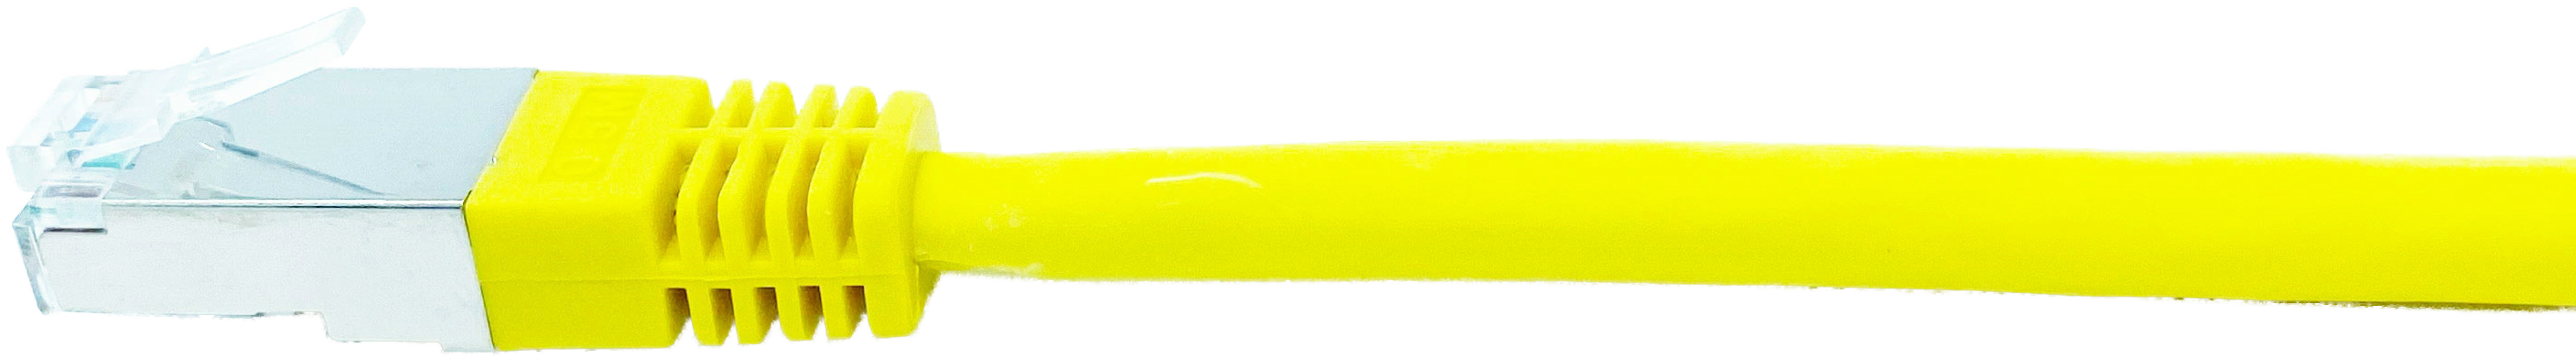 Kupferpatchkabel Cat.6 250MHz 1,0m gelb